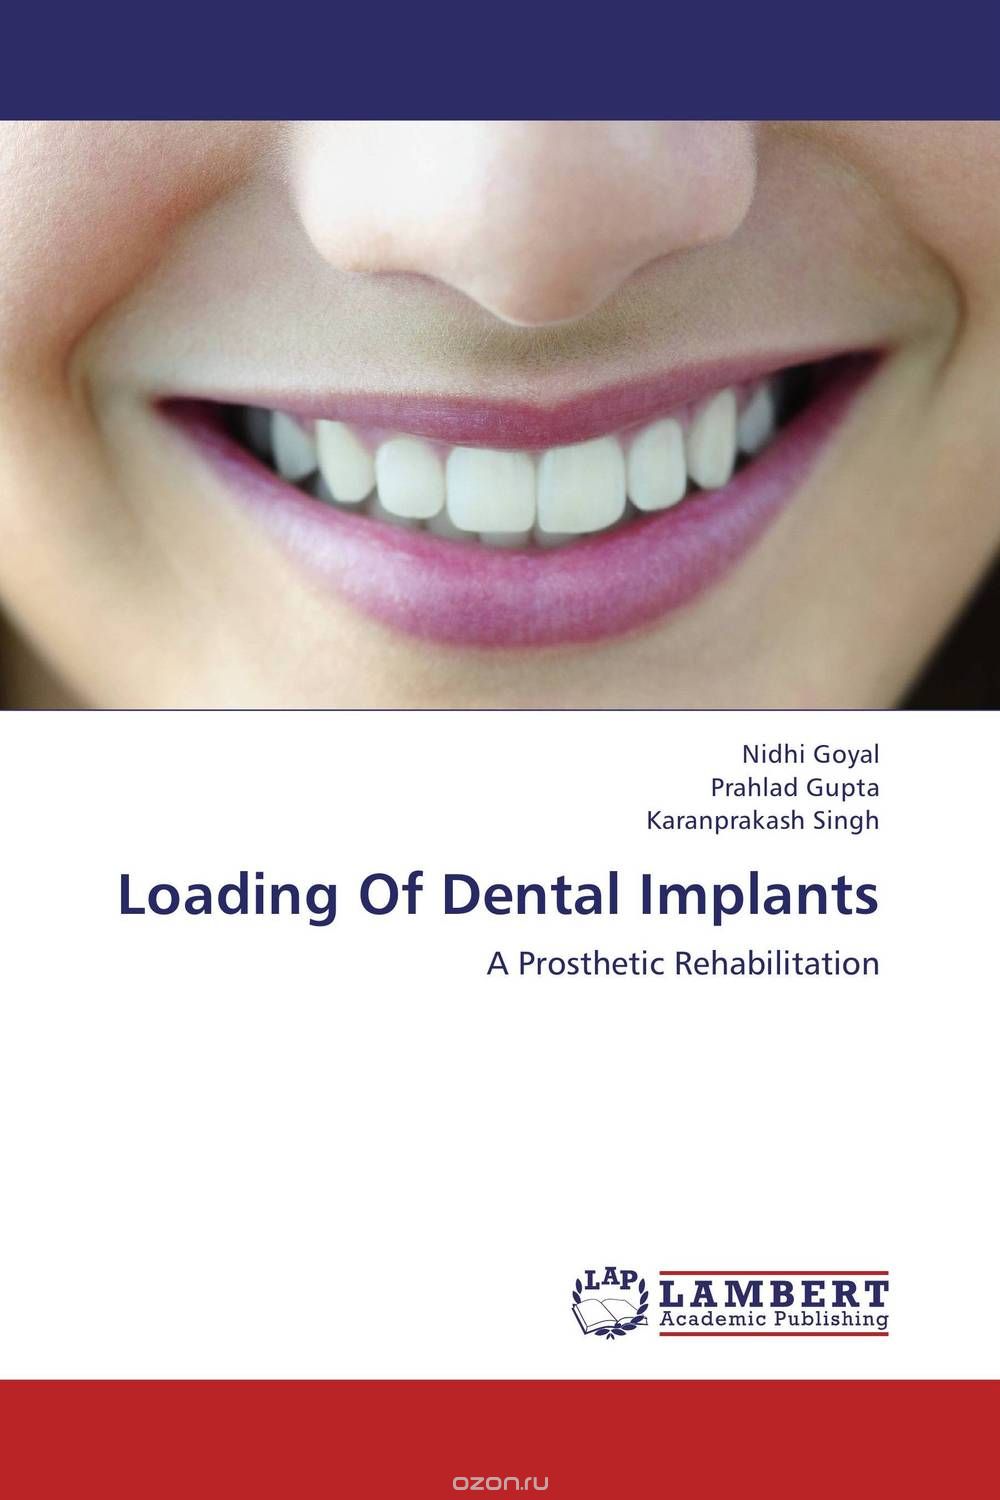 Скачать книгу "Loading Of Dental Implants"